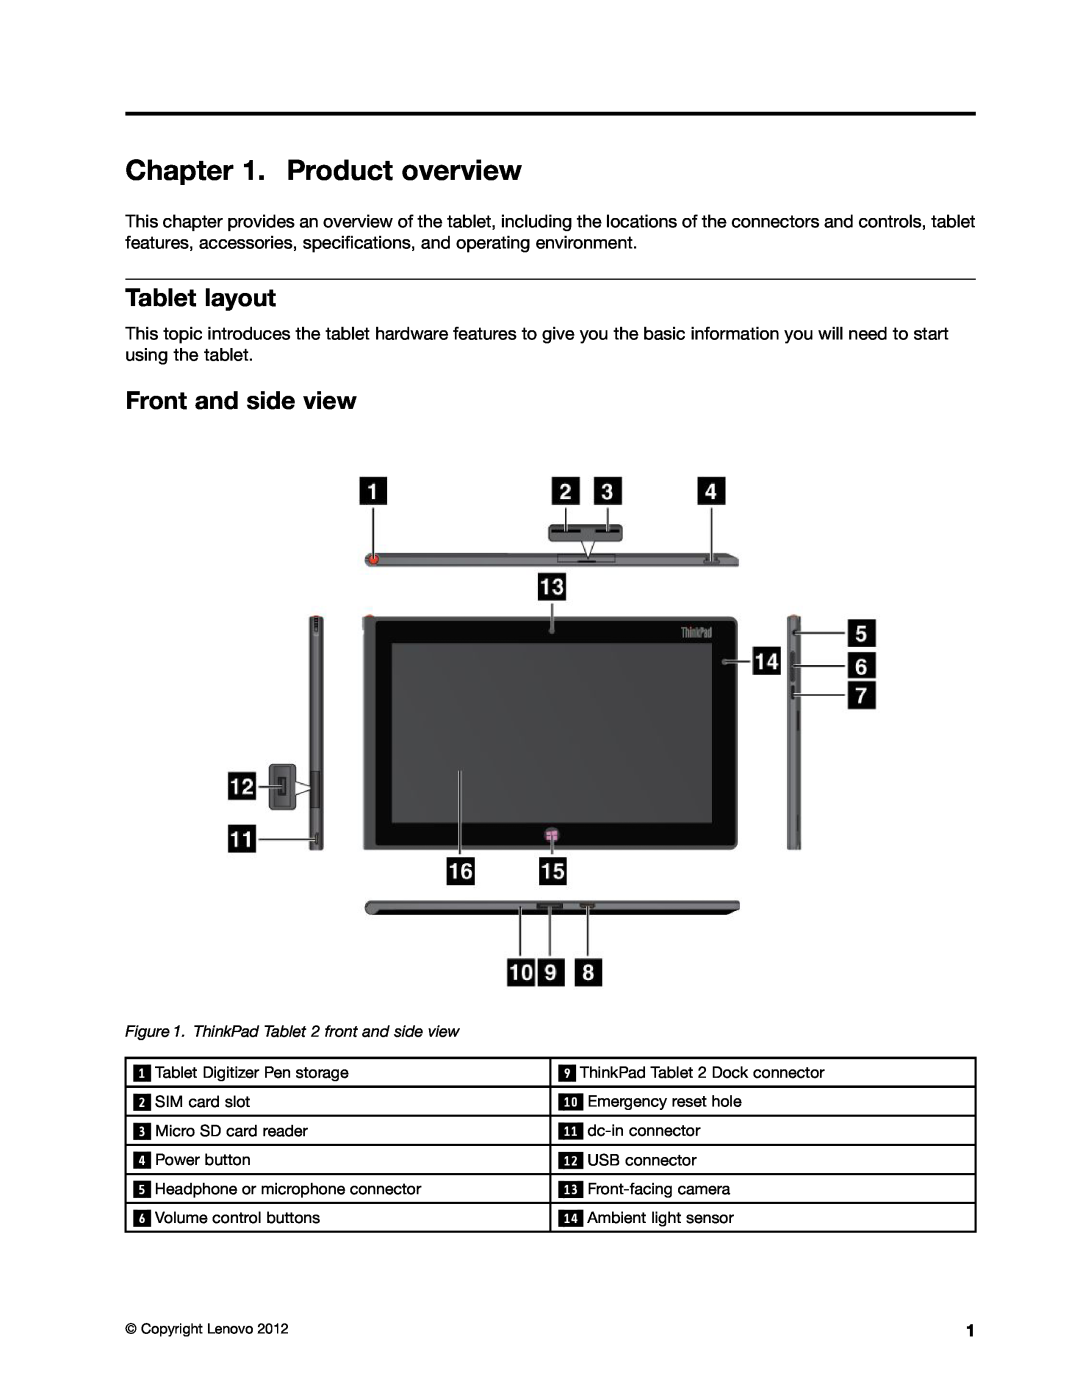 Lenovo 36795HU, 36822AU, 368229U, 368222U, 36795YU, 368228U, 36795MU manual Product overview, Tablet layout, Front and side view 